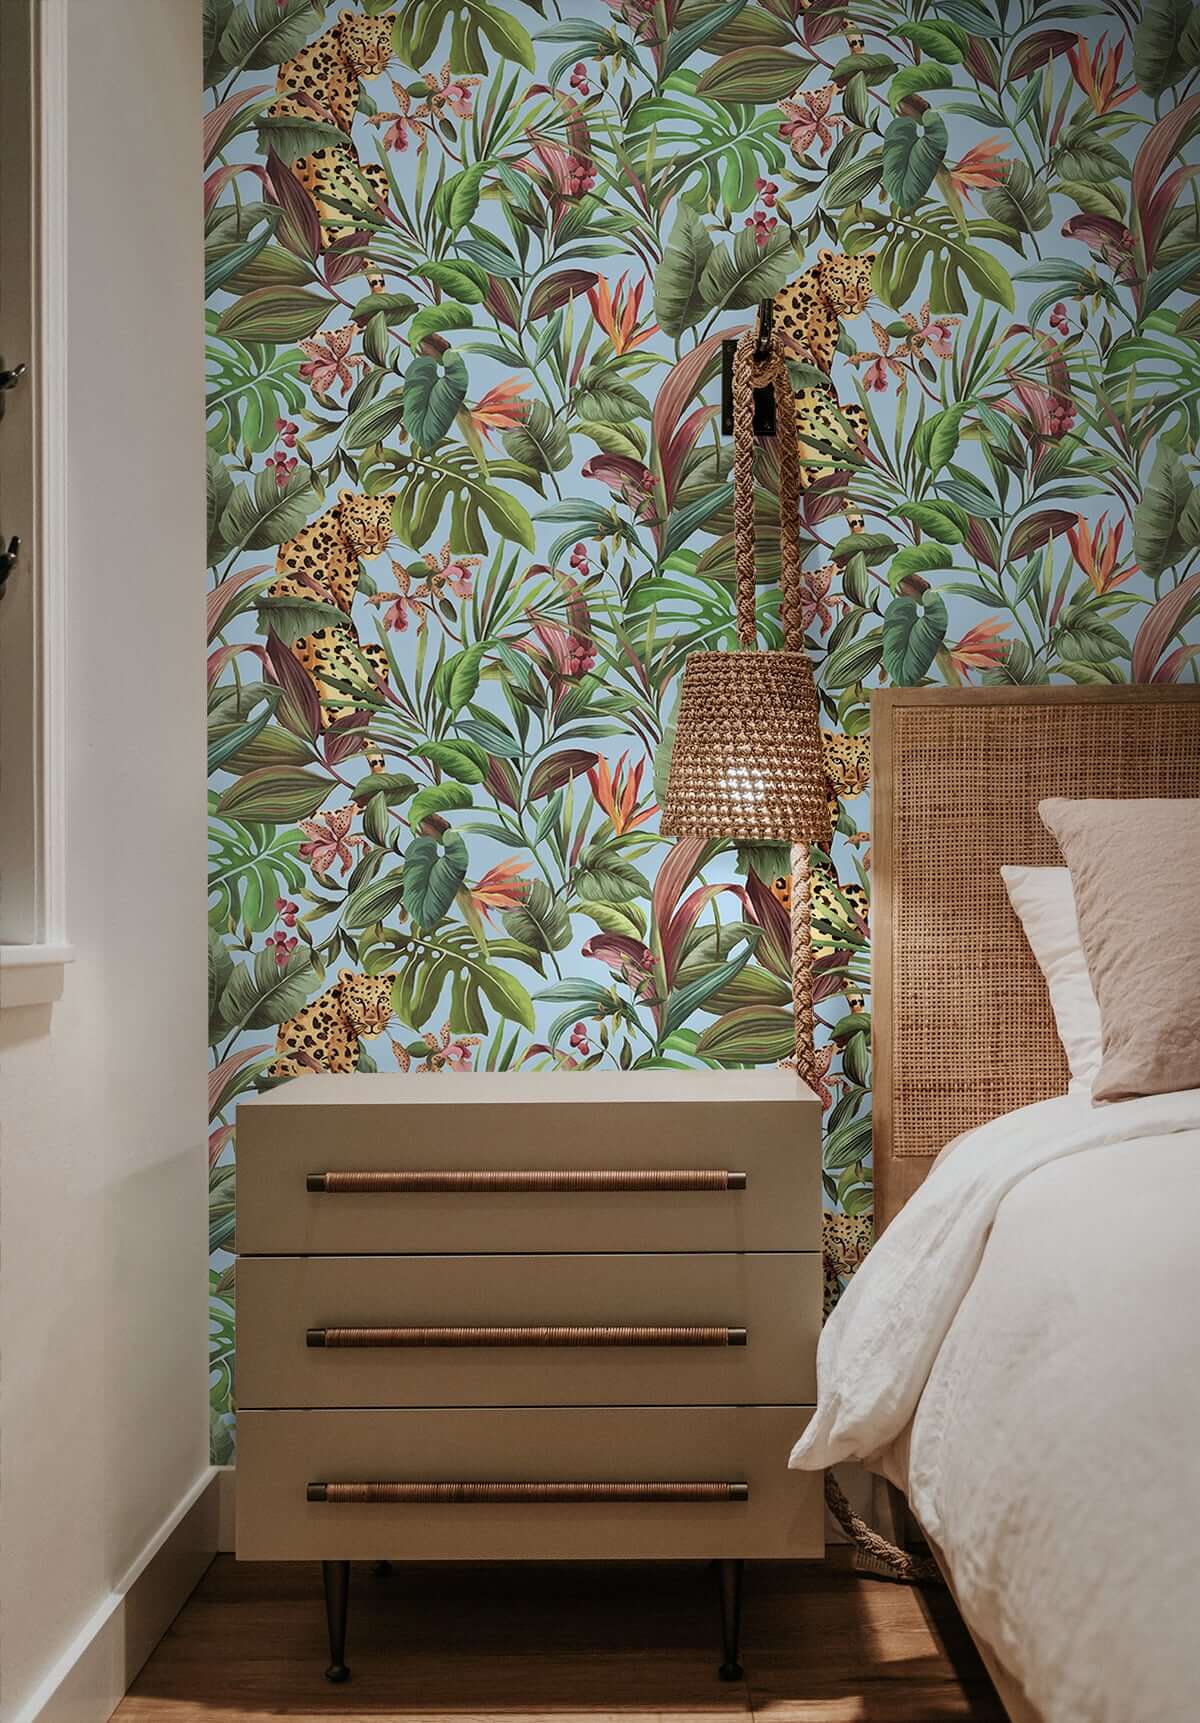 NextWall Daisy Bennett Designs Tropical Leopard Peel and Stick Wallpaper  (Blue) 